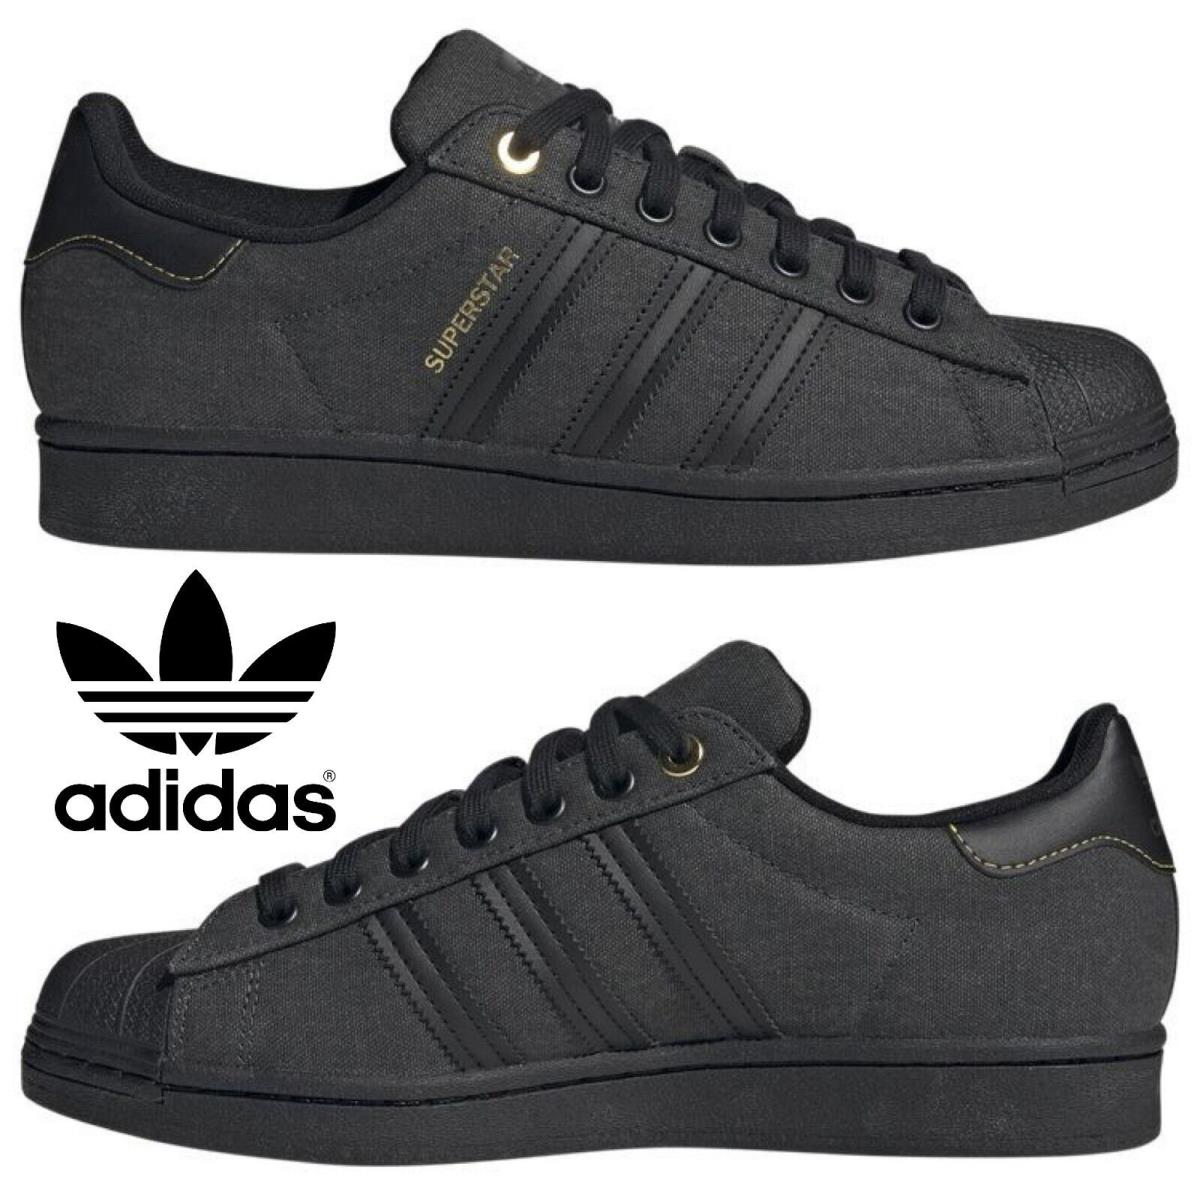 Adidas Originals Superstar Men`s Sneakers Comfort Sport Casual Shoe Red Black